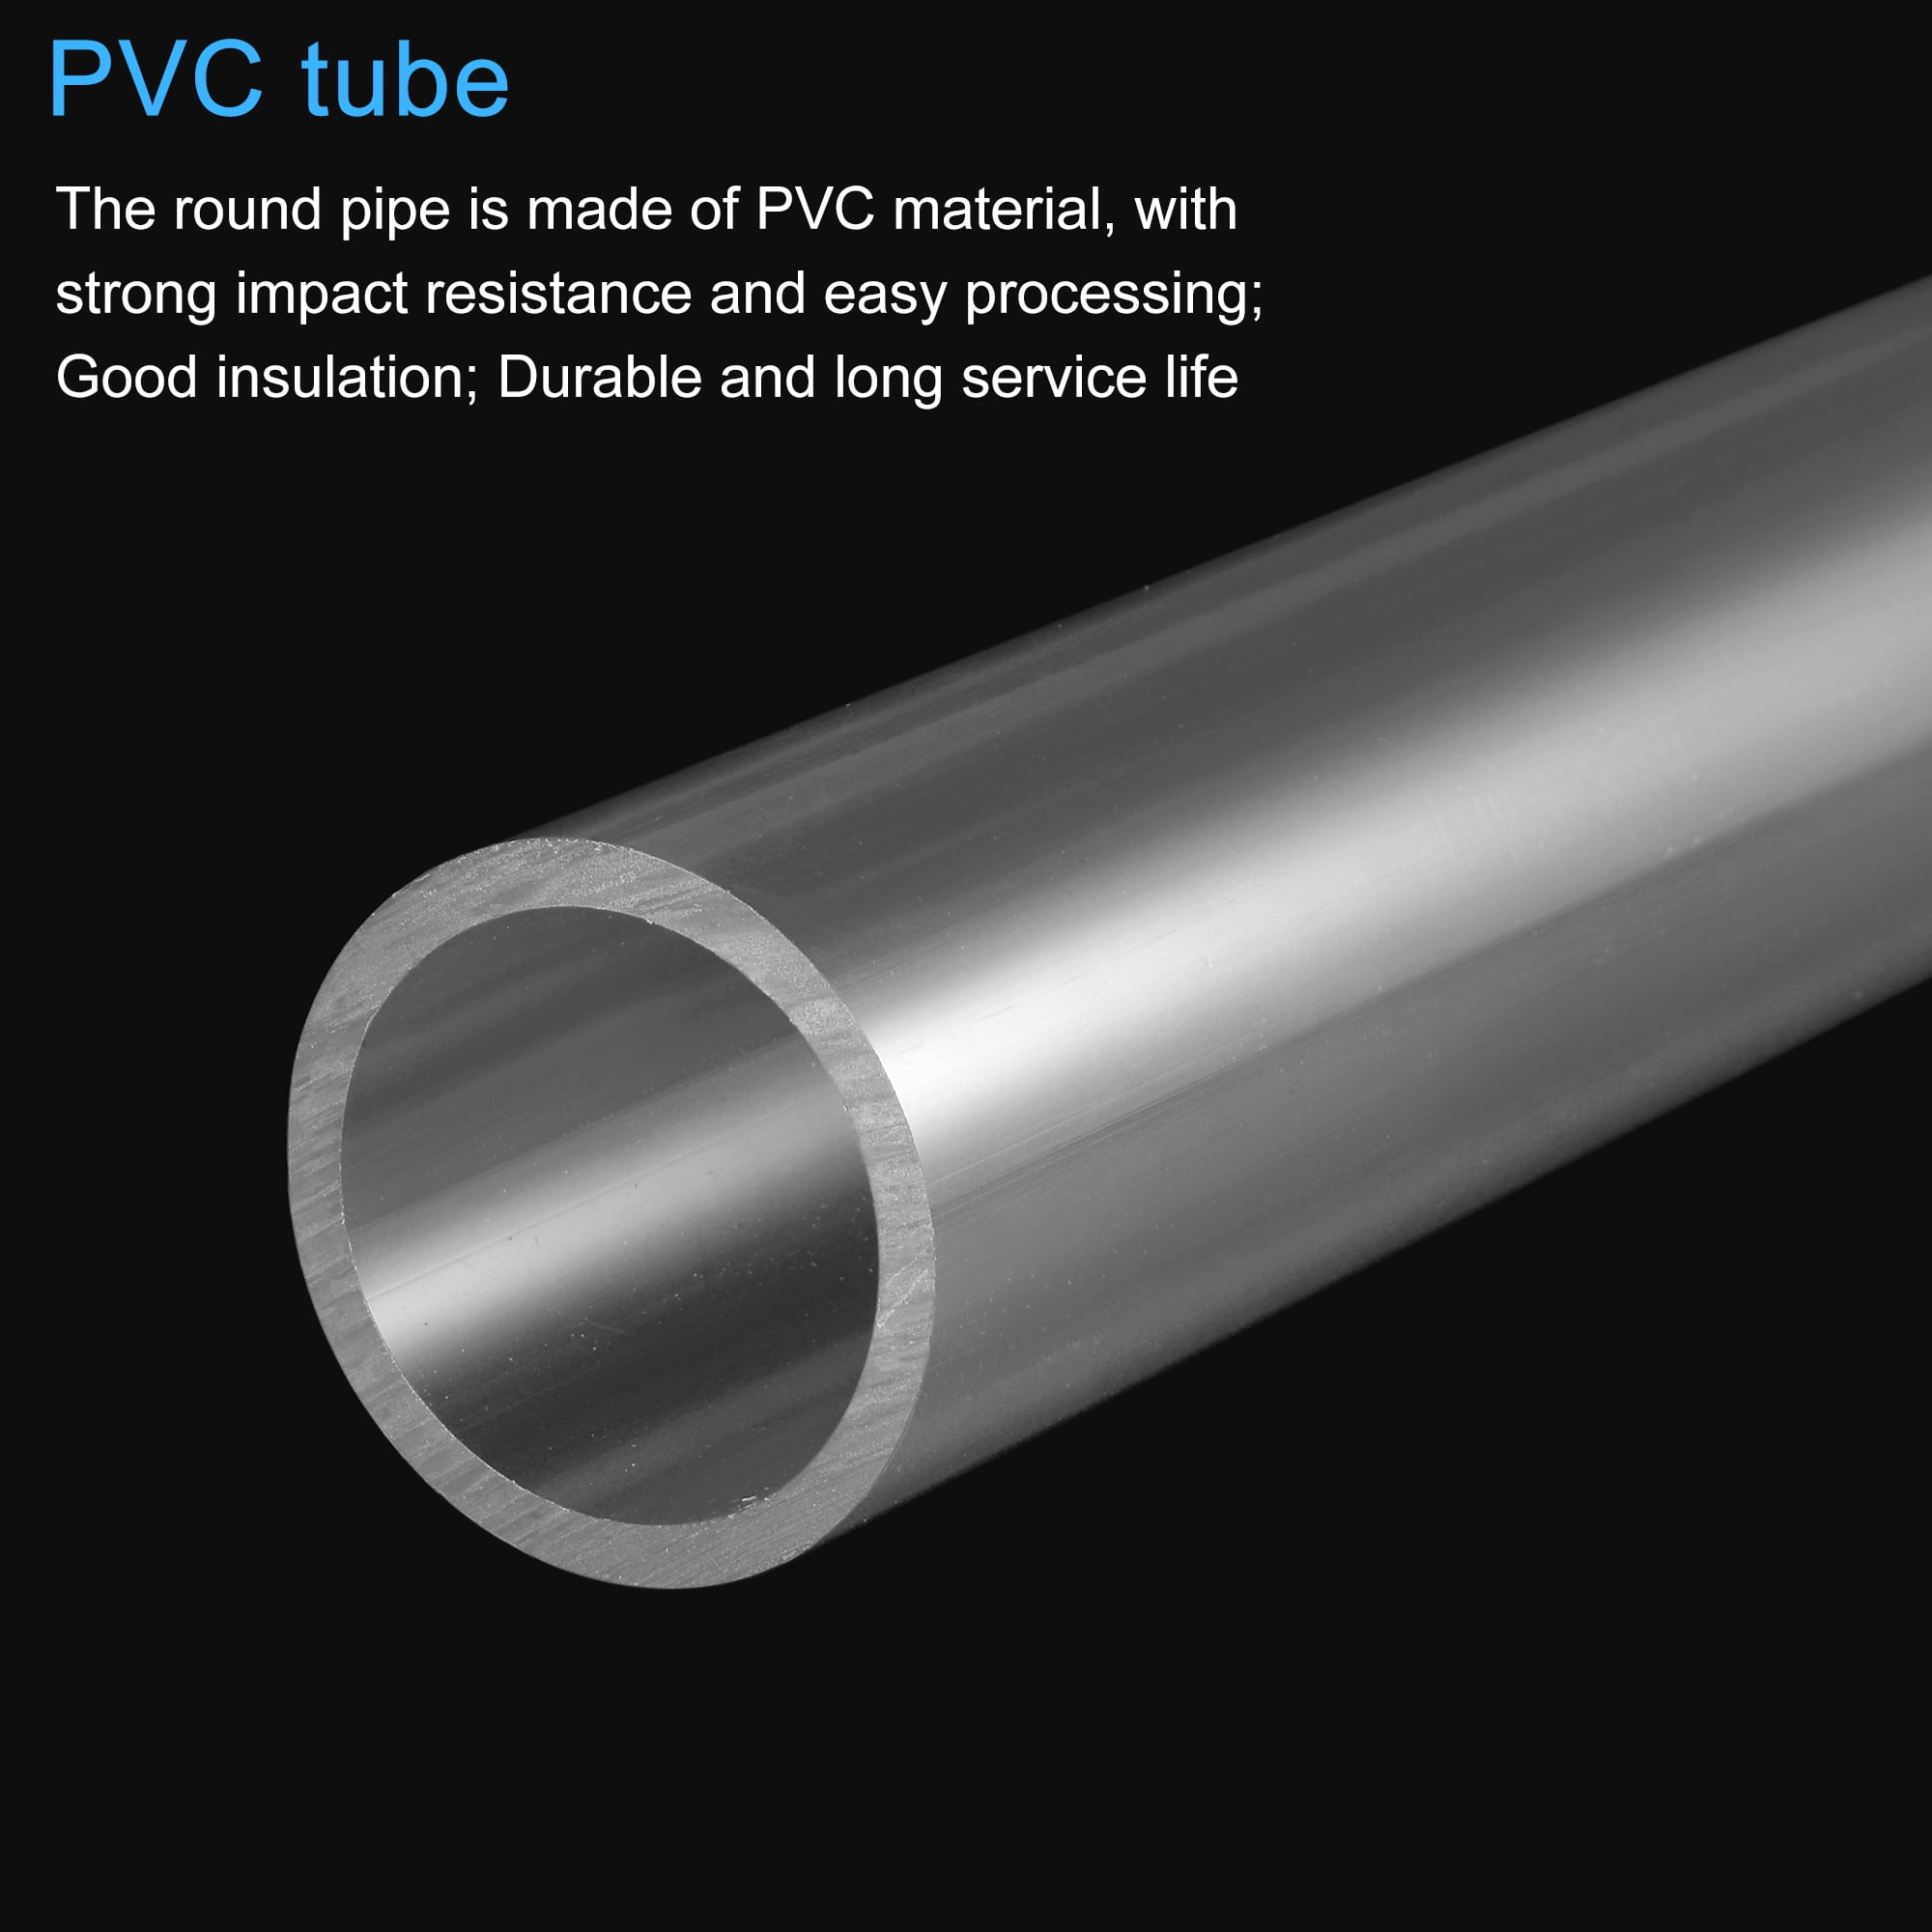 Tuyau PVC spiralé transparent pour ravitaillement essence ATL